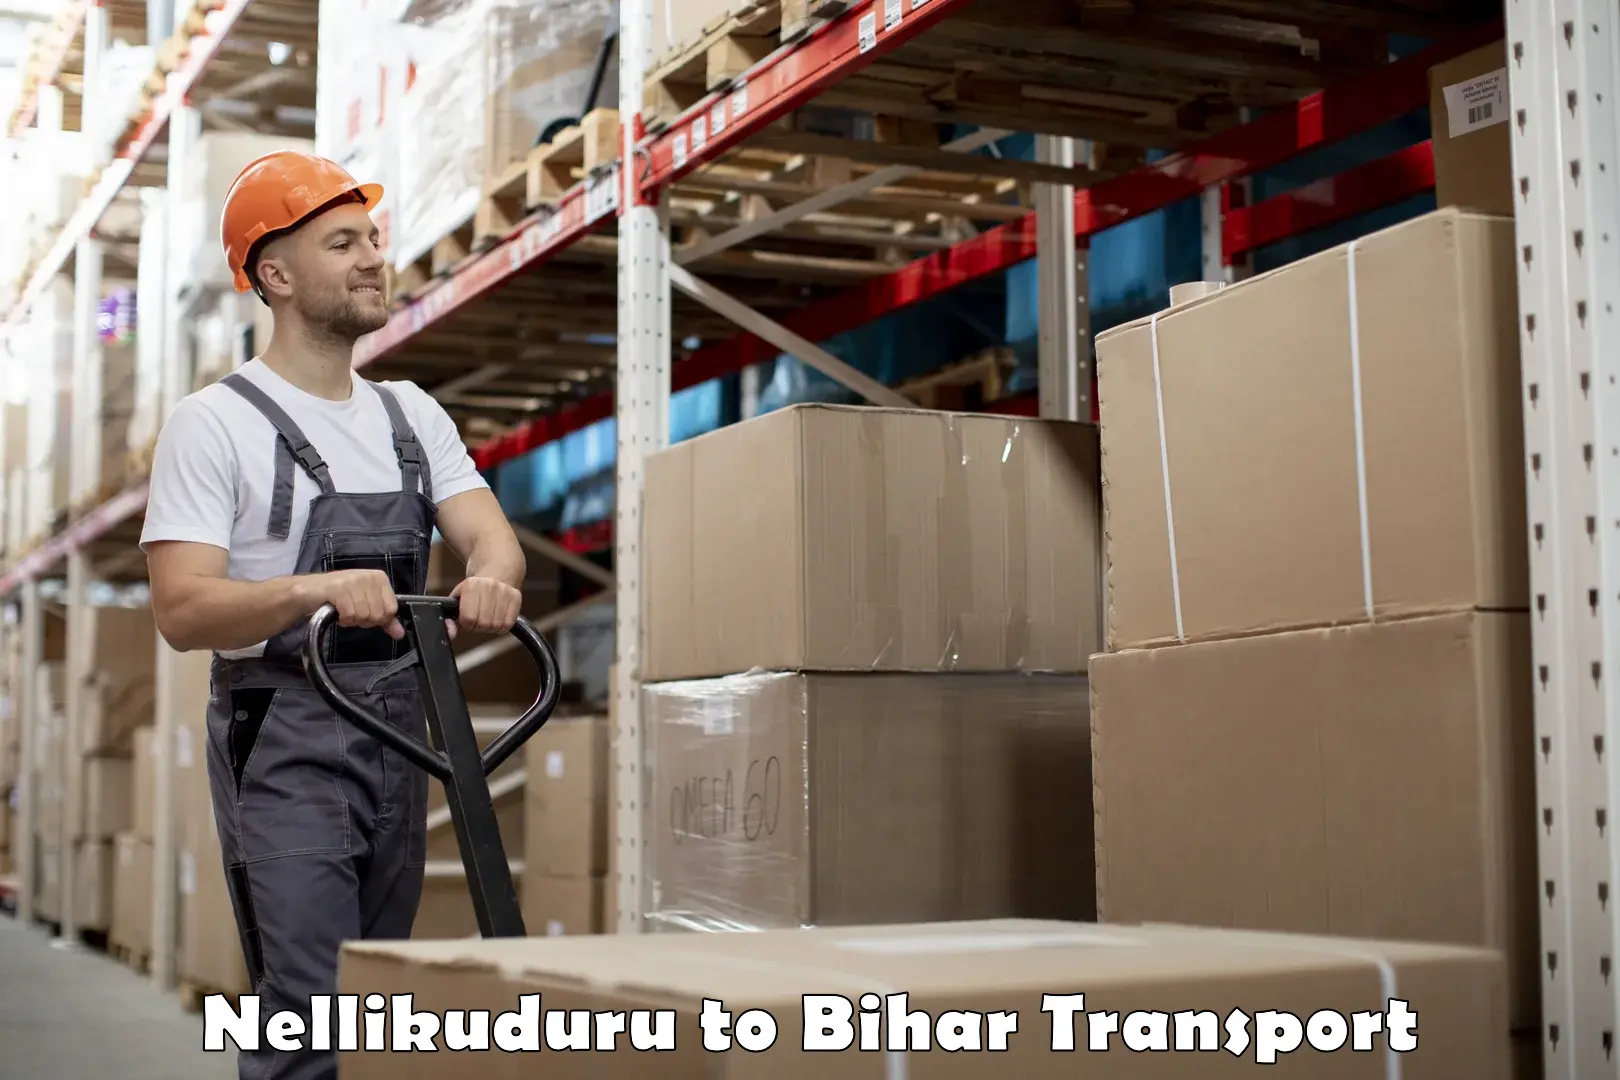 Bike transport service Nellikuduru to Bhabua